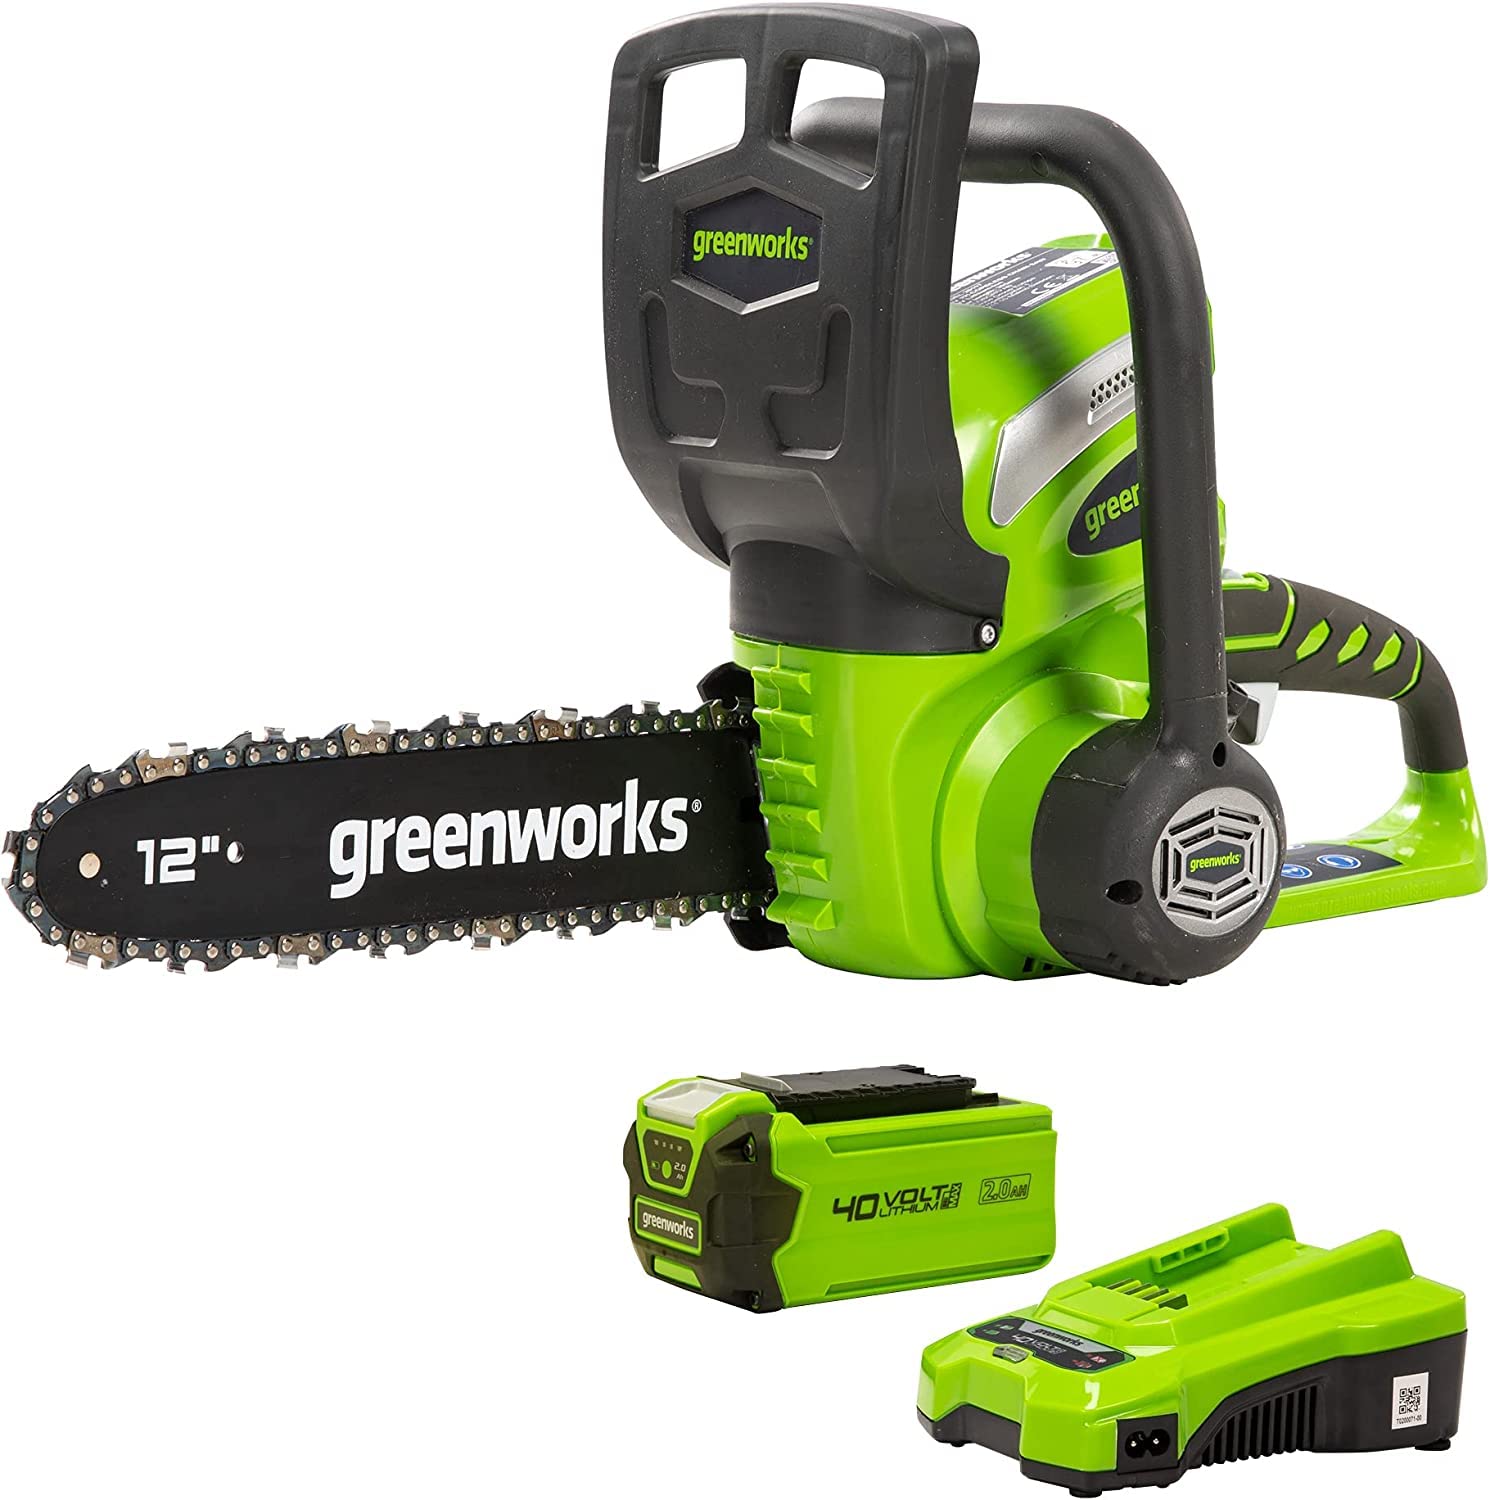 Greenworks G40CS30K2 Akku Kettensäge mit Akku und Ladegerät, 30 cm Blattlänge, 4,2 m/s Kettengeschwindigkeit, 3,7 kg, automatische Kettenschmierung, 40V 2Ah Akku, 3 Jahre Garantie